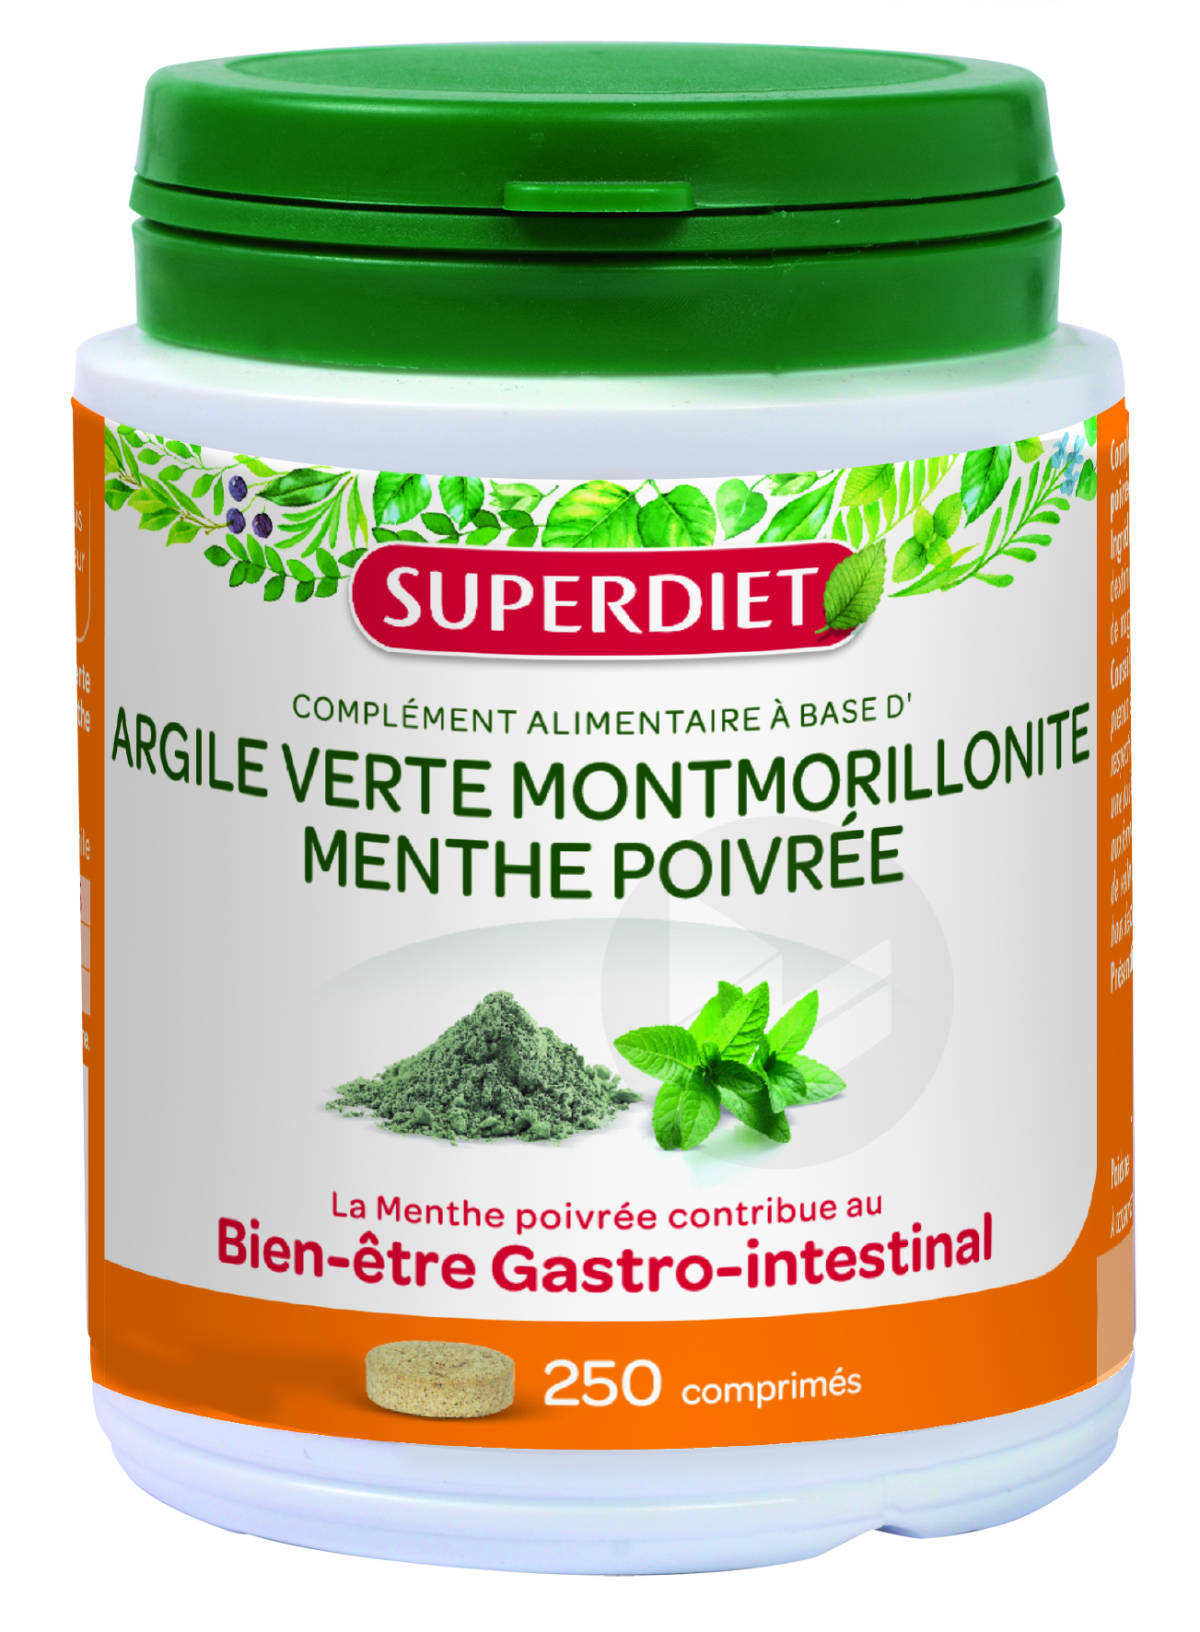 Argile Verte Montmorillonite Menthe Poivrée 250 Comprimés